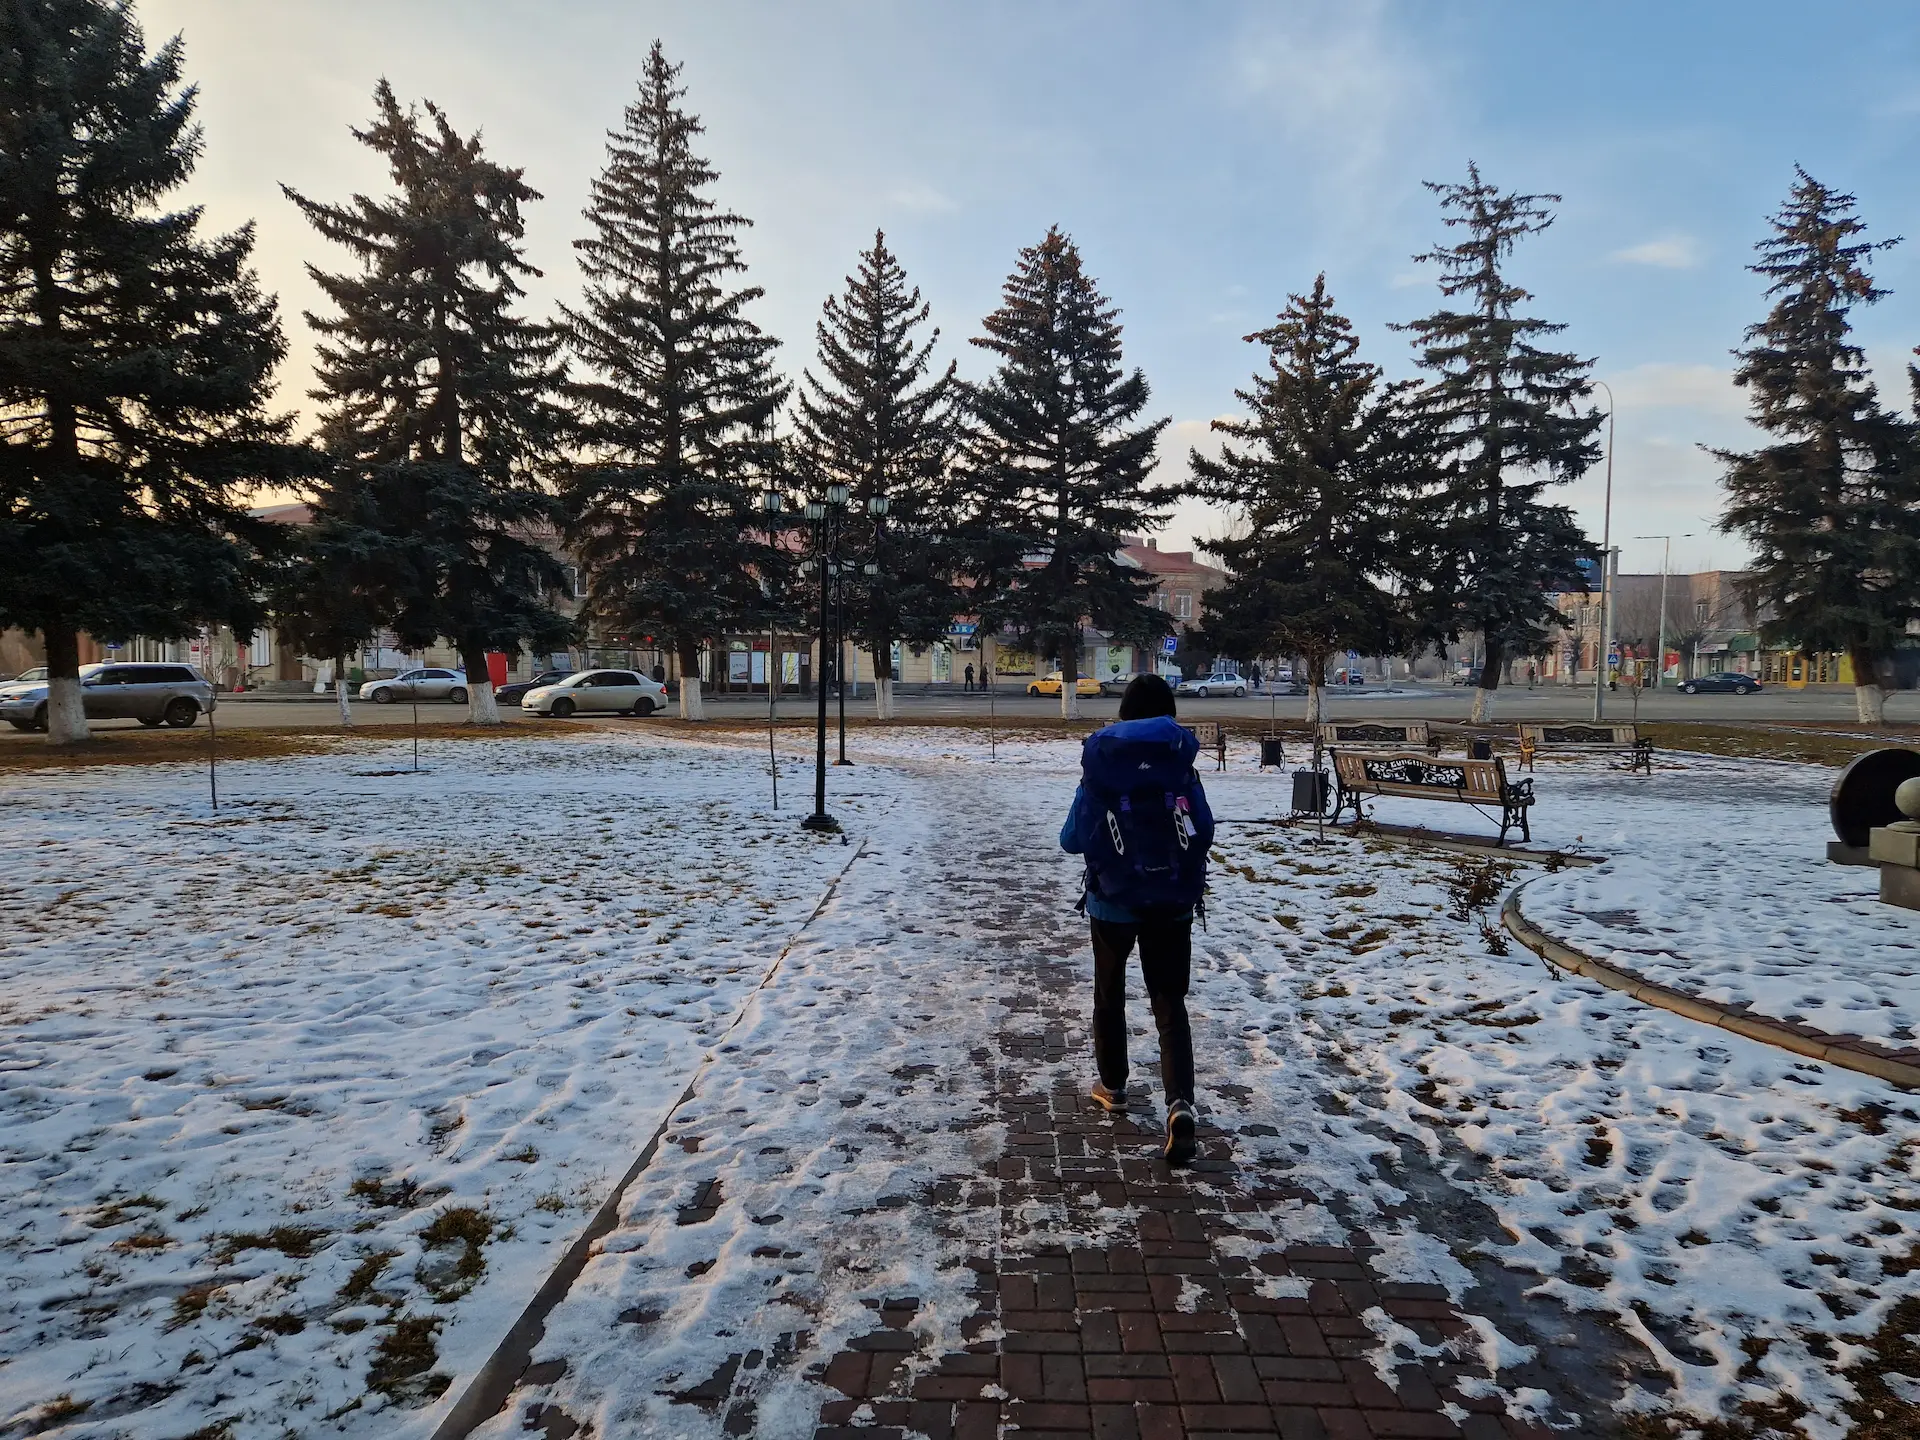 Clara à notre arrivée à Gyumri, il y a de la neige sur le sol.